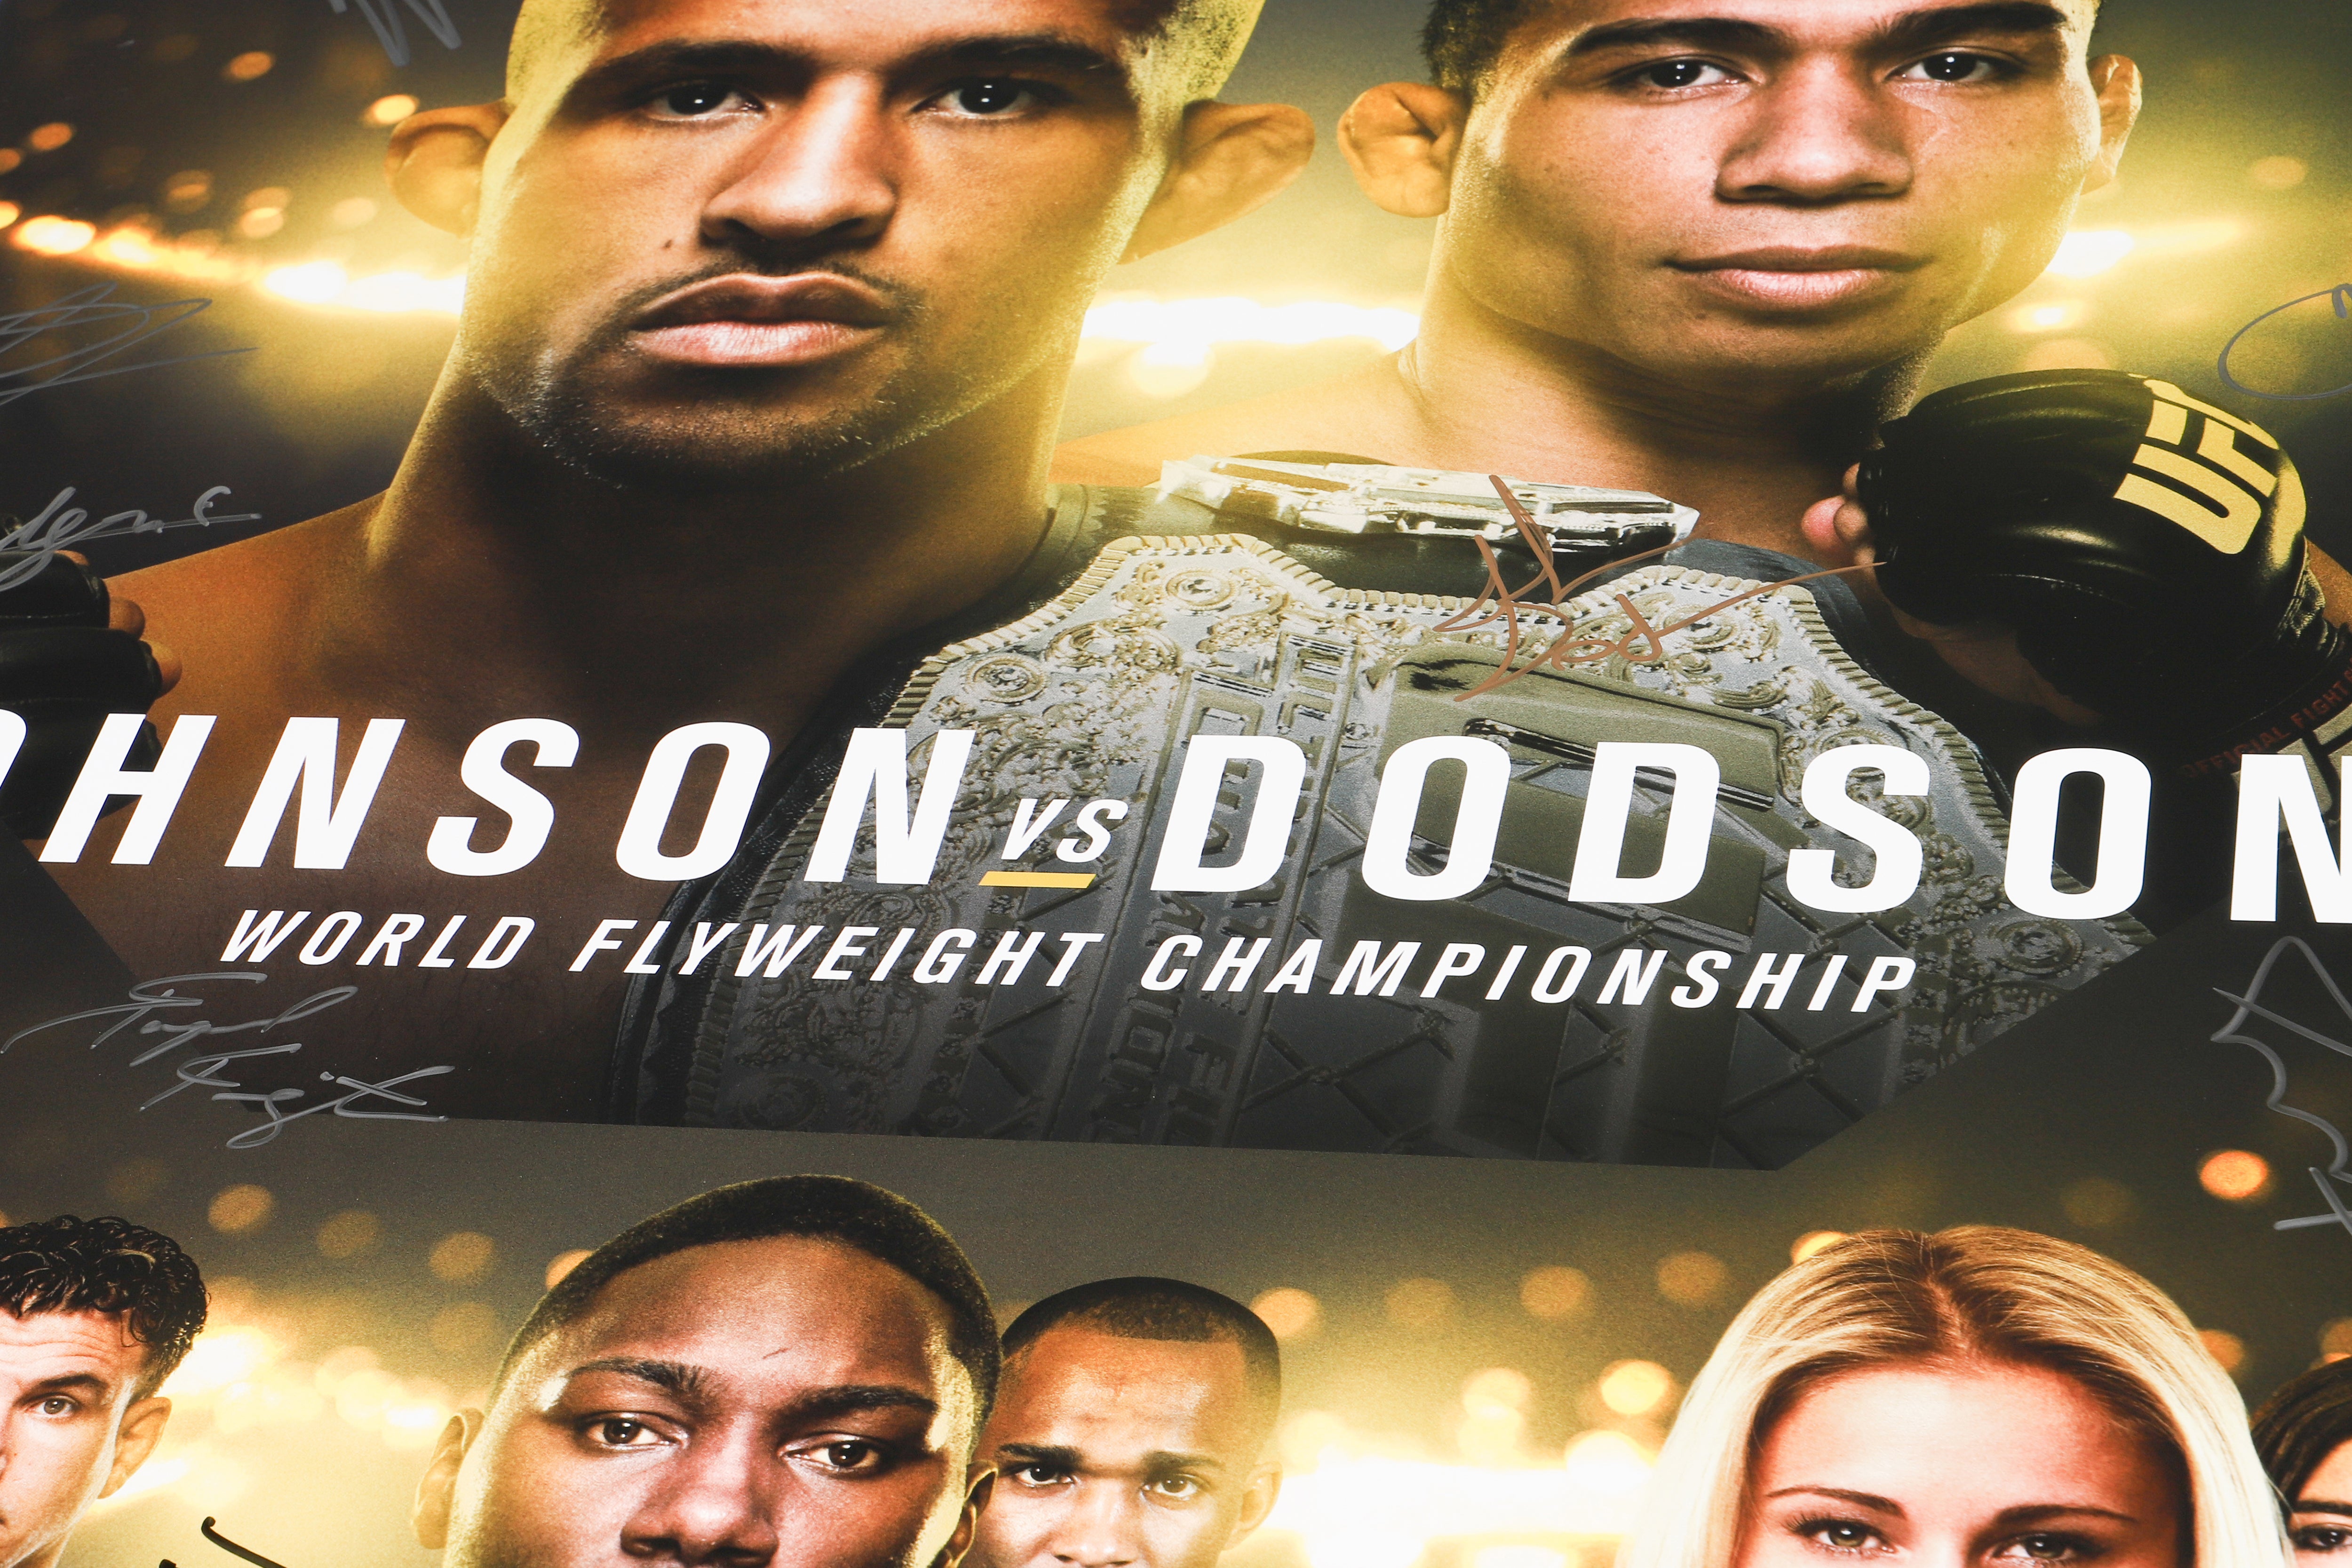 UFC 191: Johnson vs Dodson 2 Autographed Event Poster